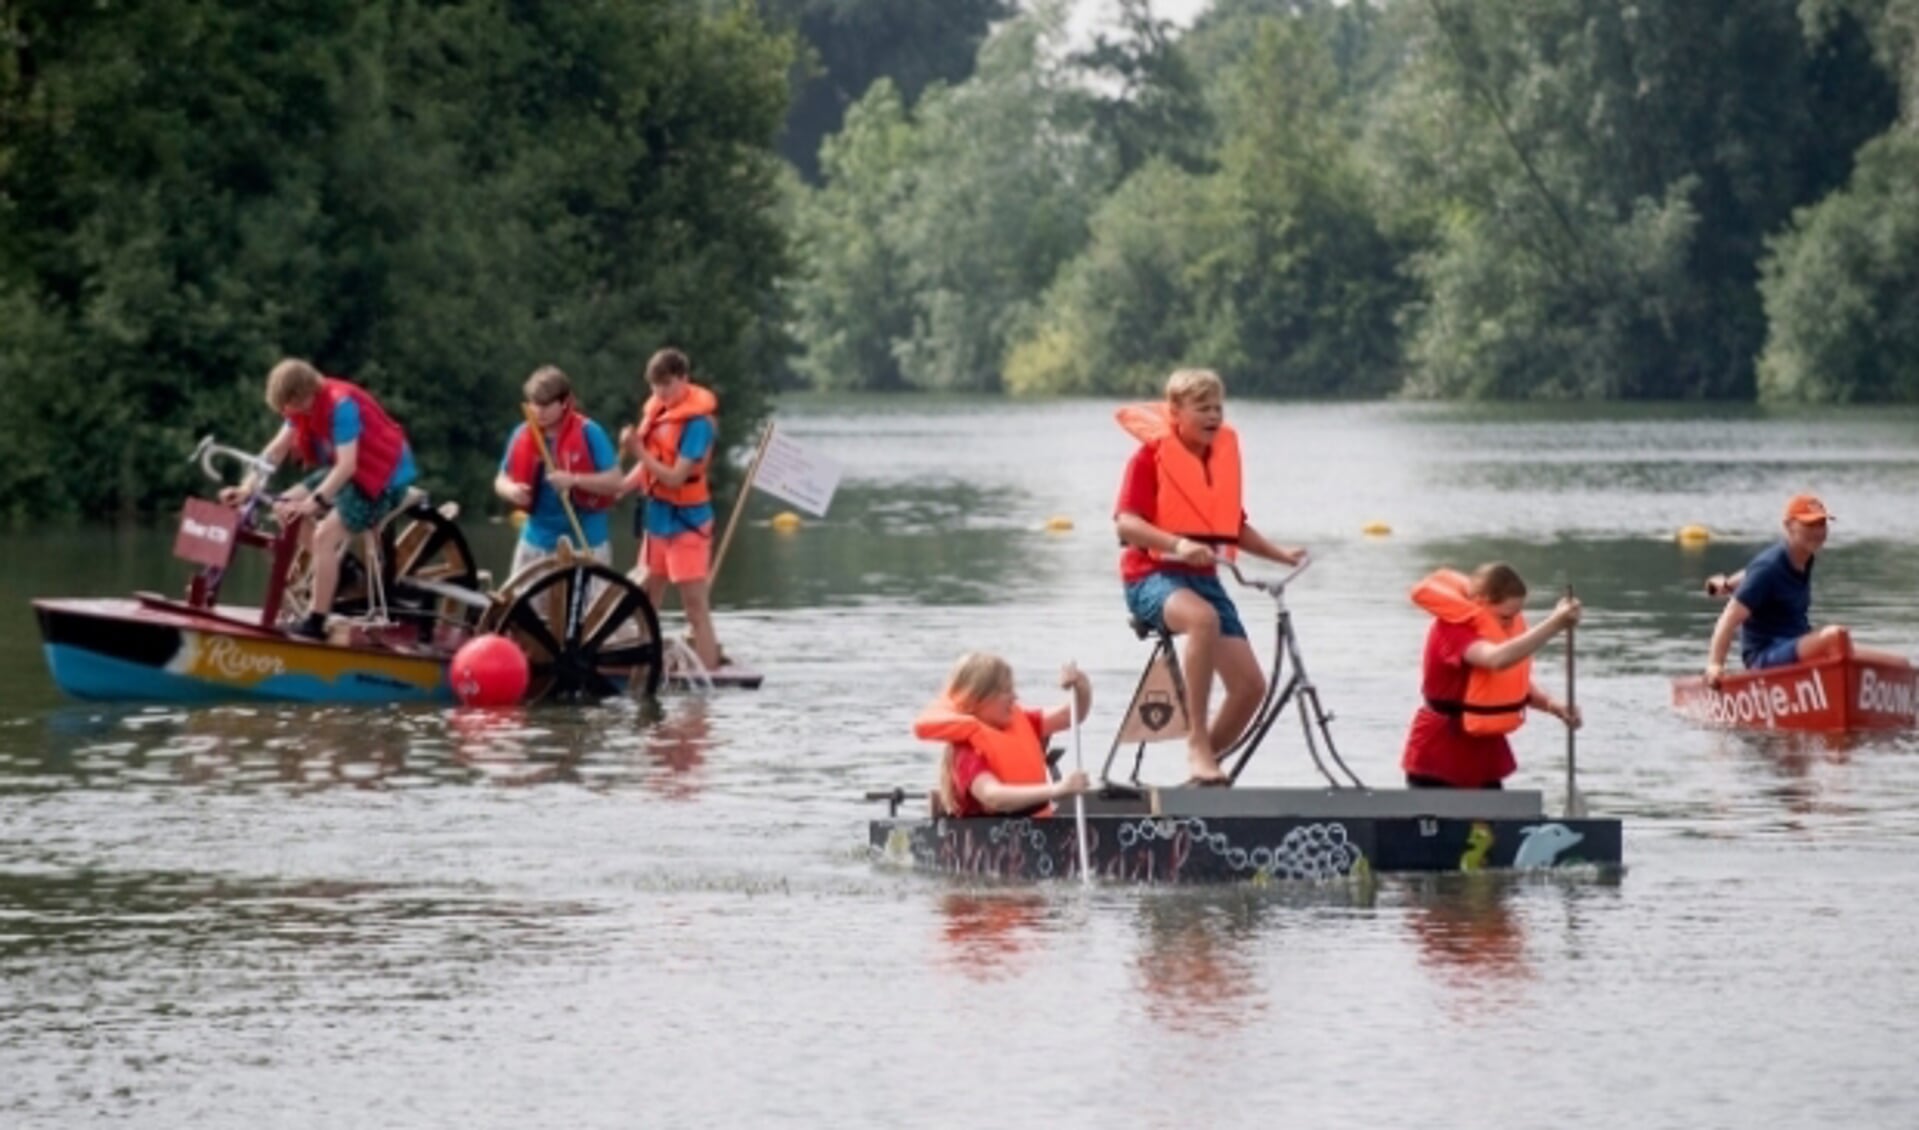 Battle of the Boats - een te gekke samenwerking tussen jongeren en bedrijven inclusief een vaarwedstrijd met zelfgebouwde boten - is een van de initiatieven van HUB Rivierenland